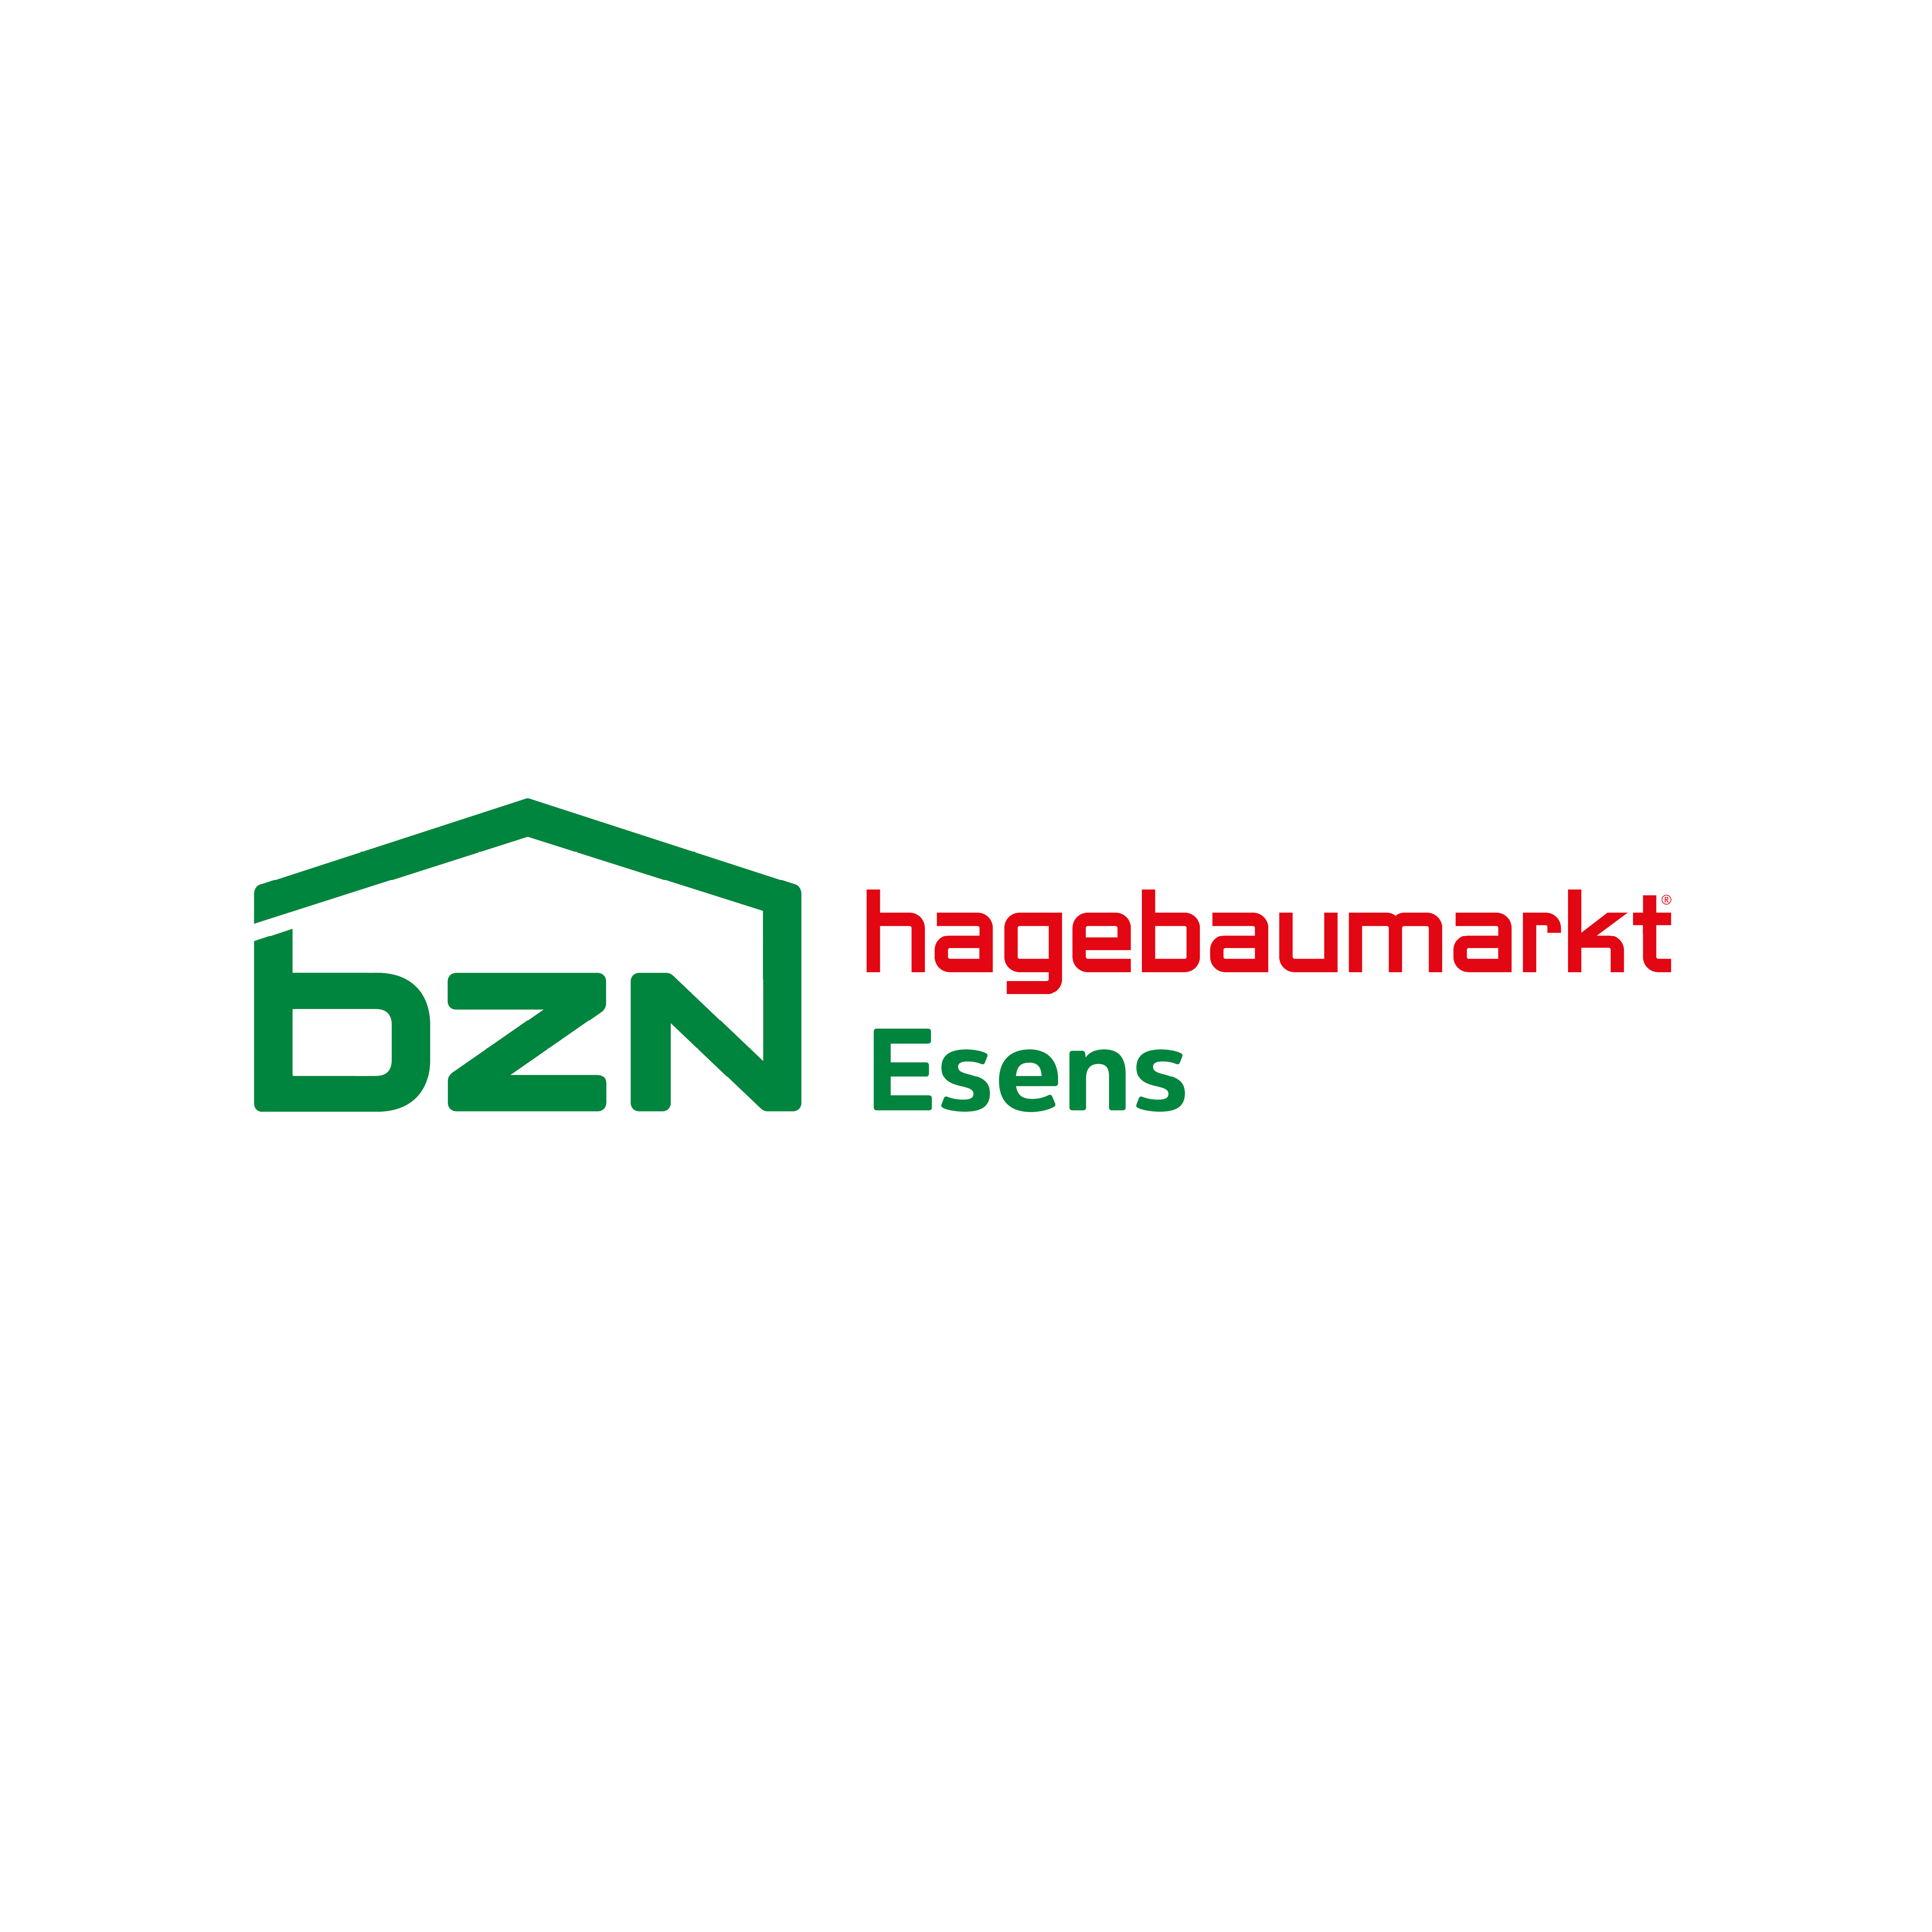 BZN Hagebaumarkt Esens GmbH & Co. KG in Esens - Logo